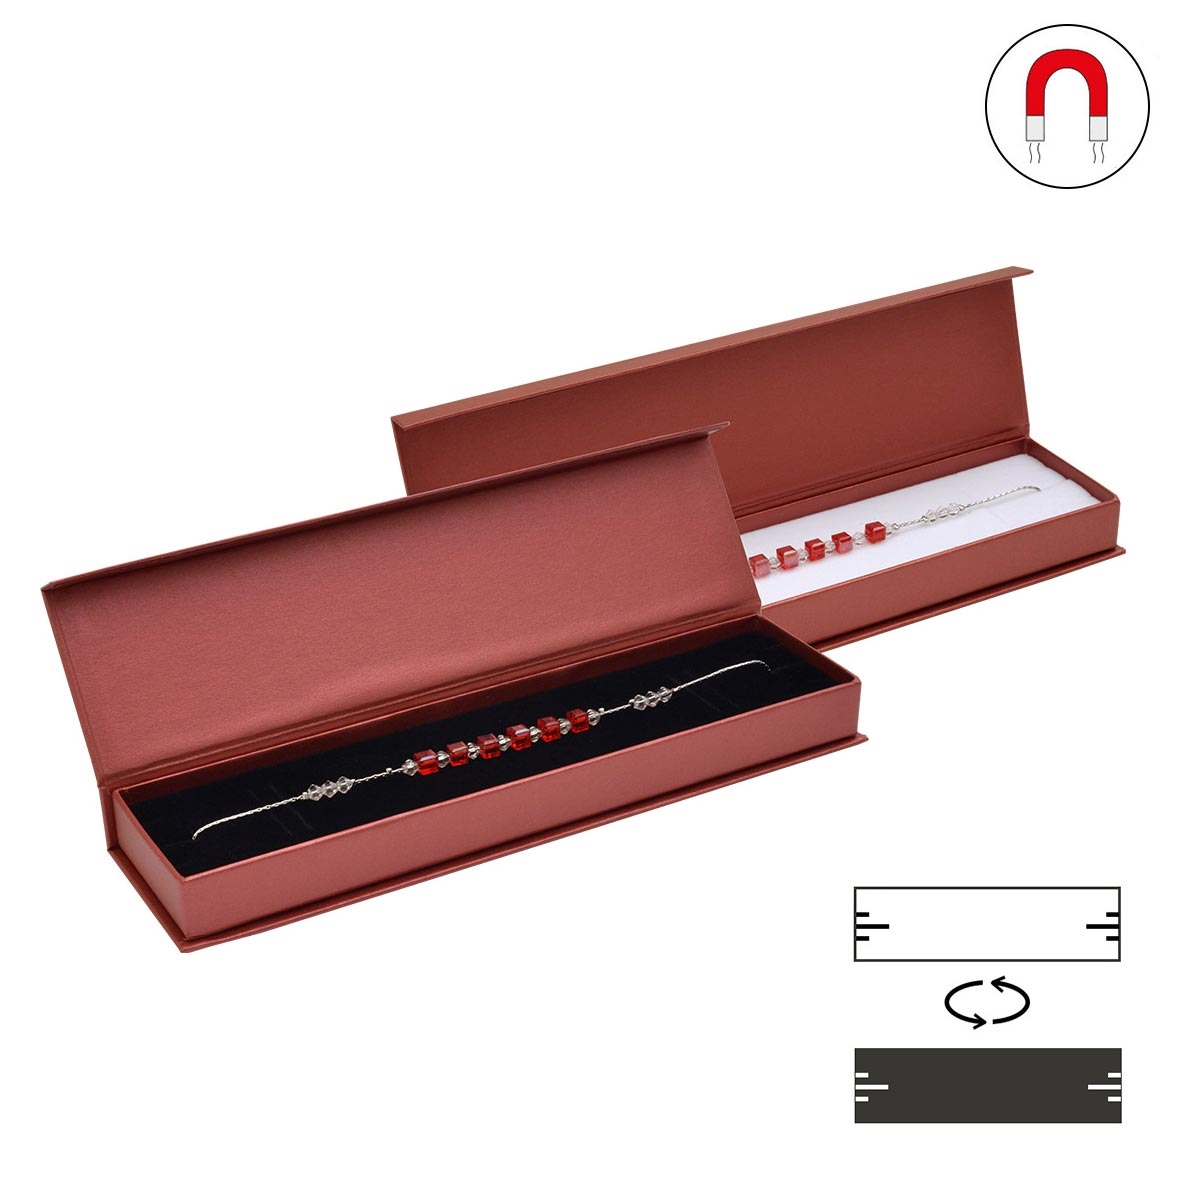 Šperky4U Dárková krabička na náramek červená, magnetické zavírání - KR0384-RD